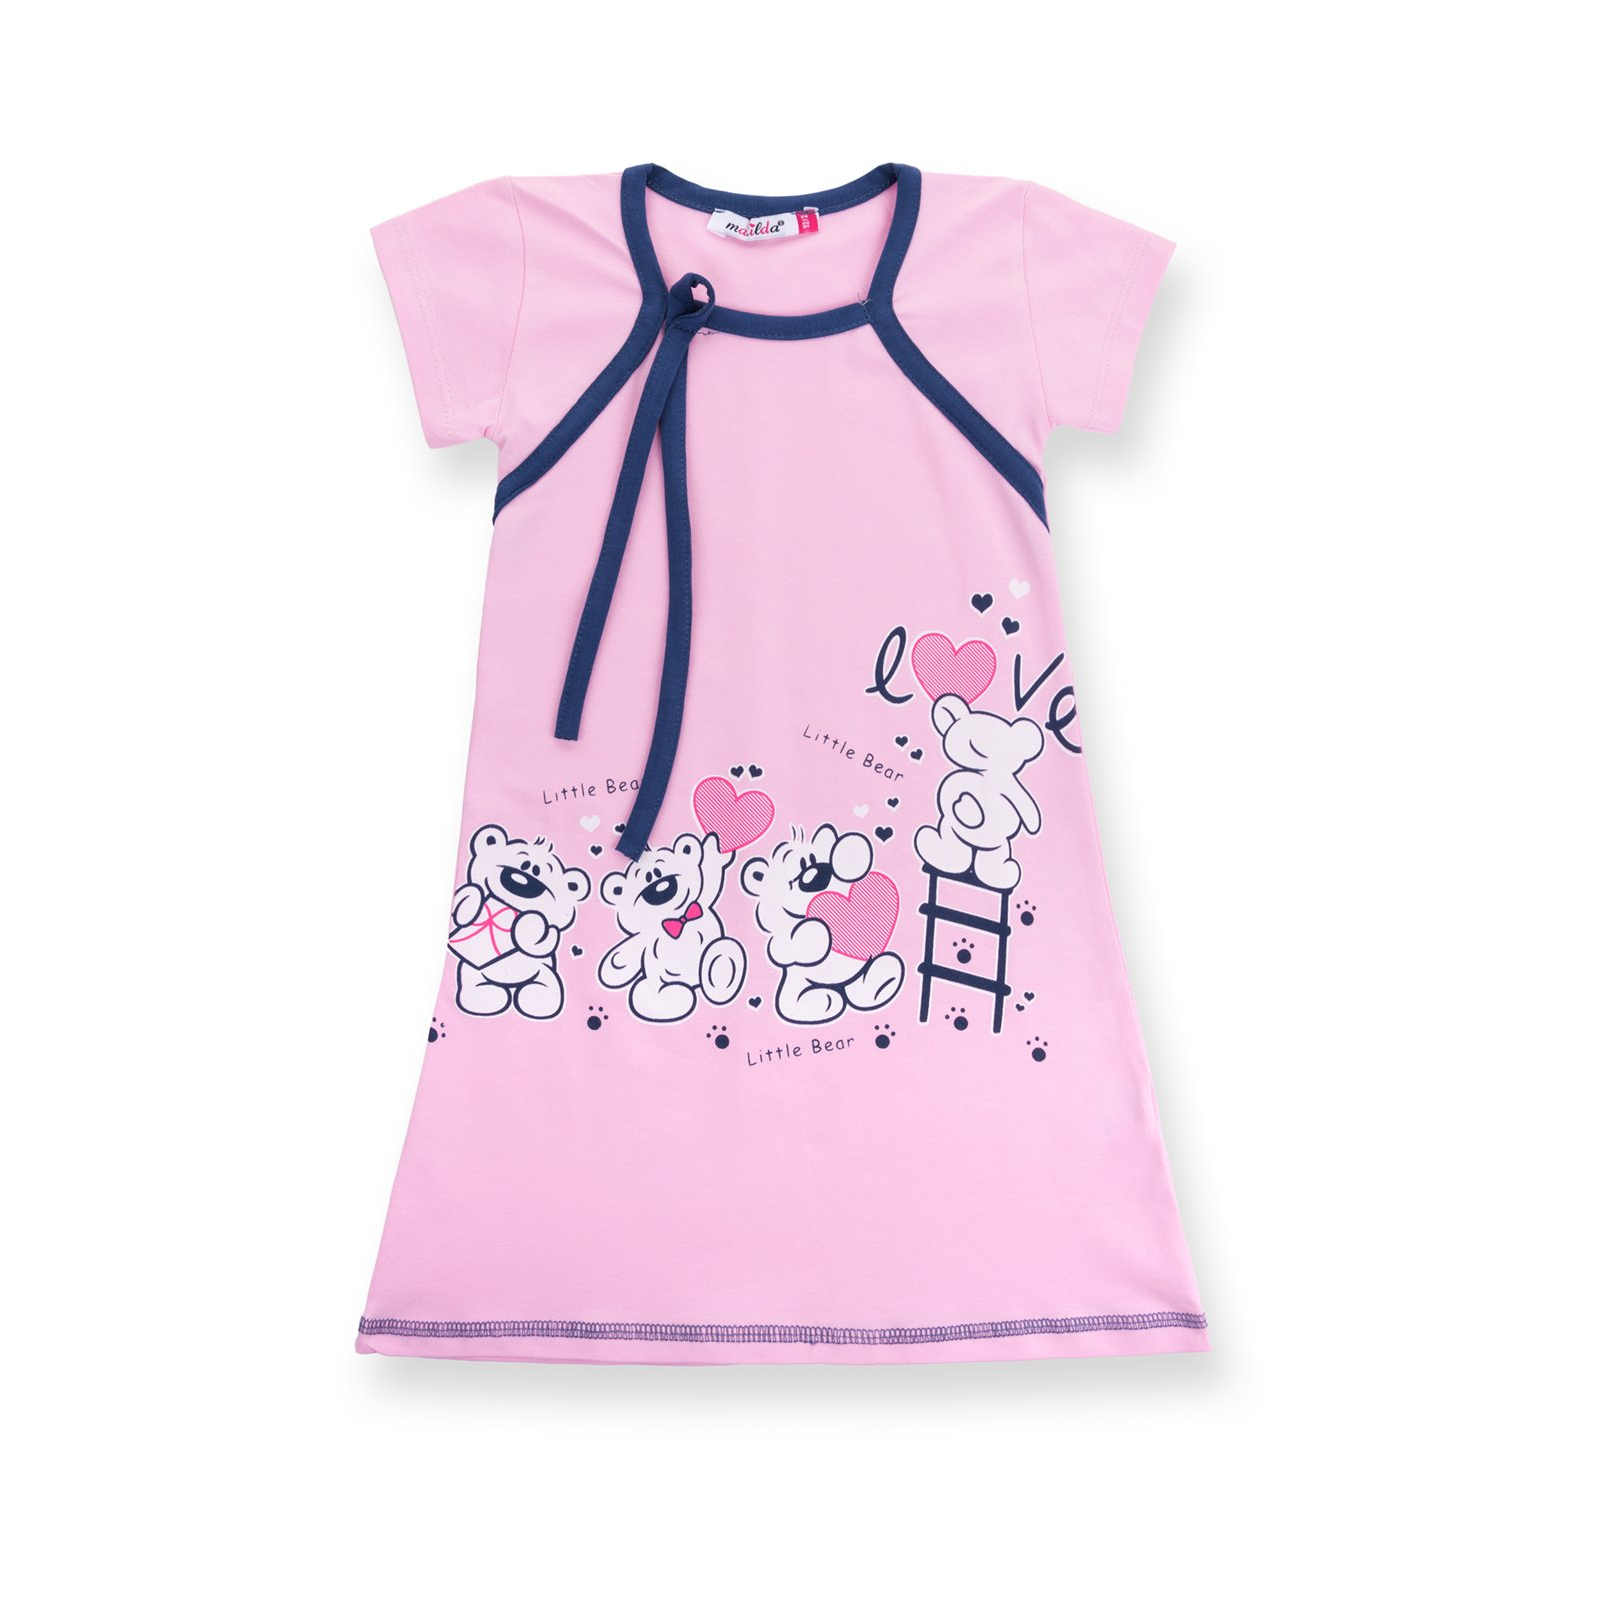 Пижама Matilda и халат с мишками "Love" (7445-110G-pink) изображение 3